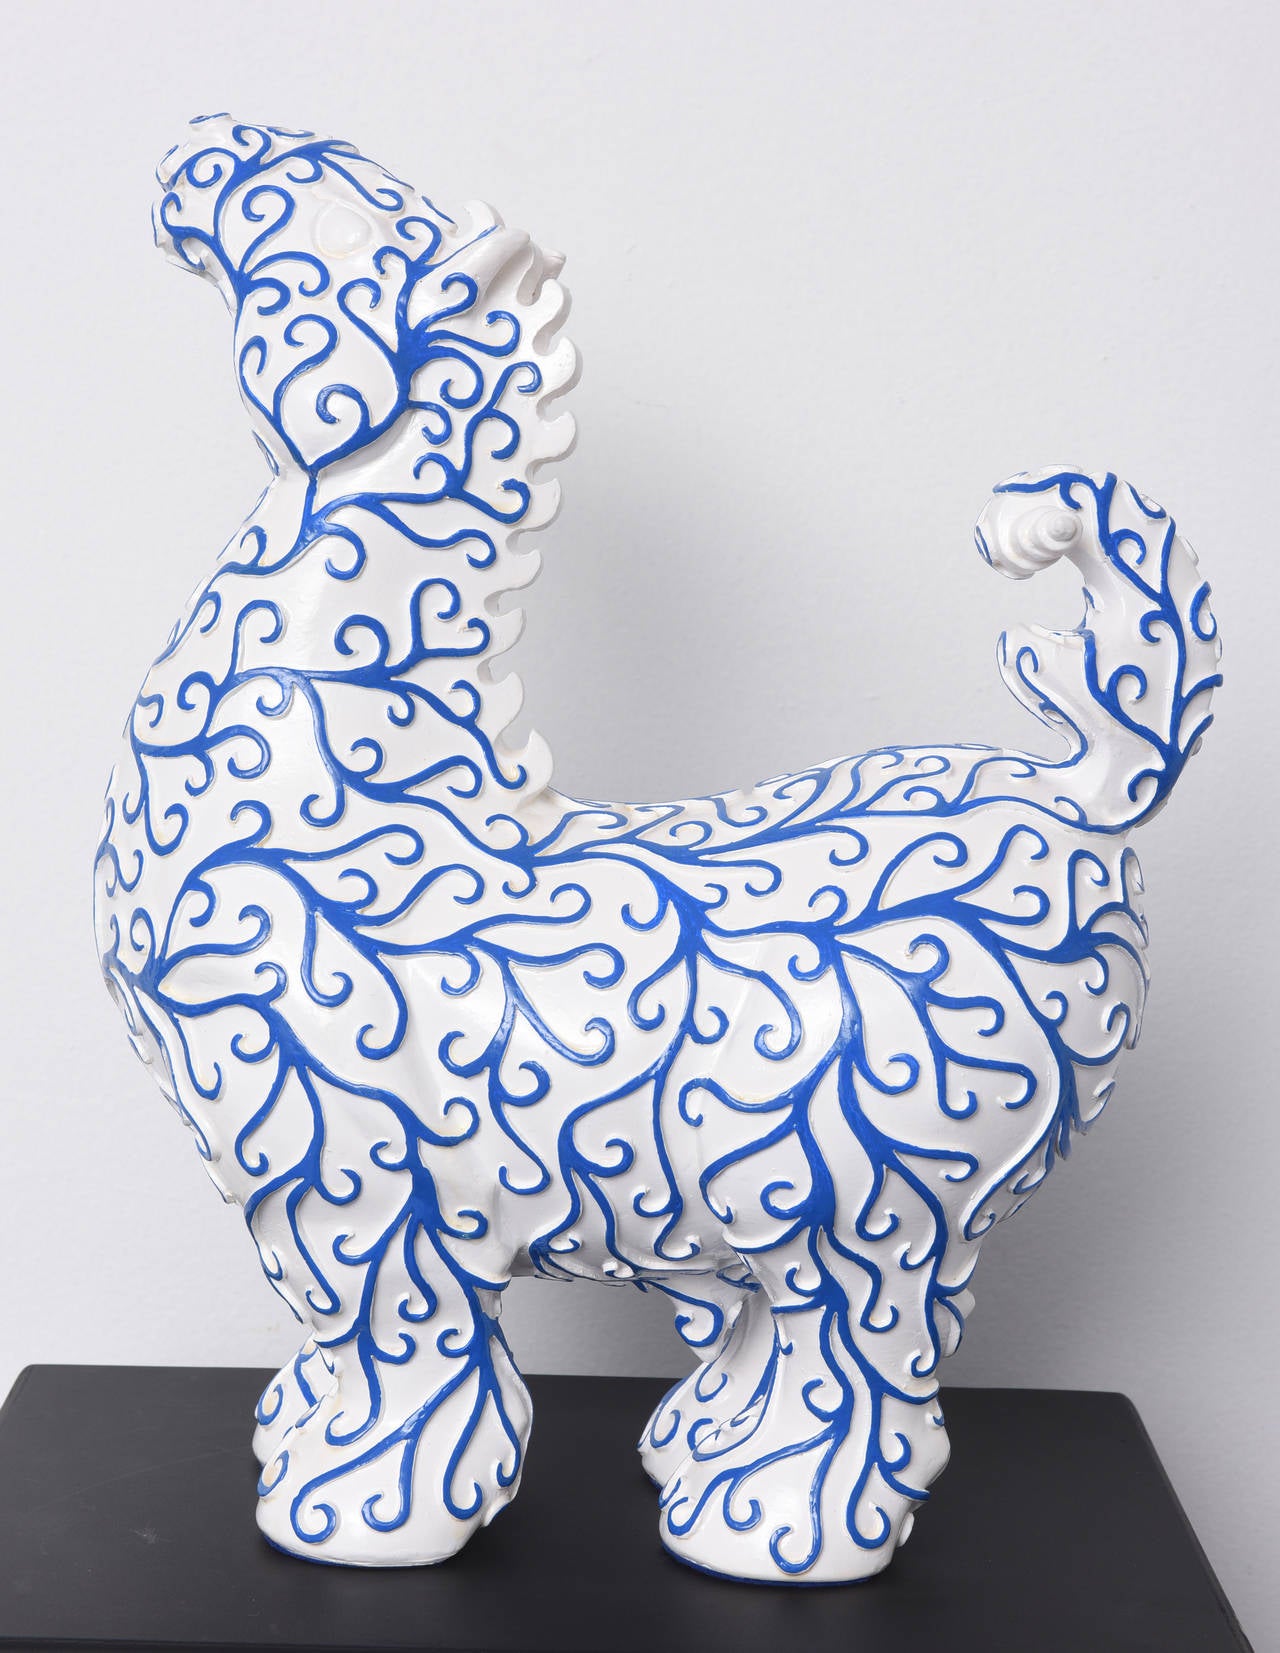 Arabesques Pferd – Skulptur aus blauem und weißem Harz – Sculpture von Patrick Schumacher